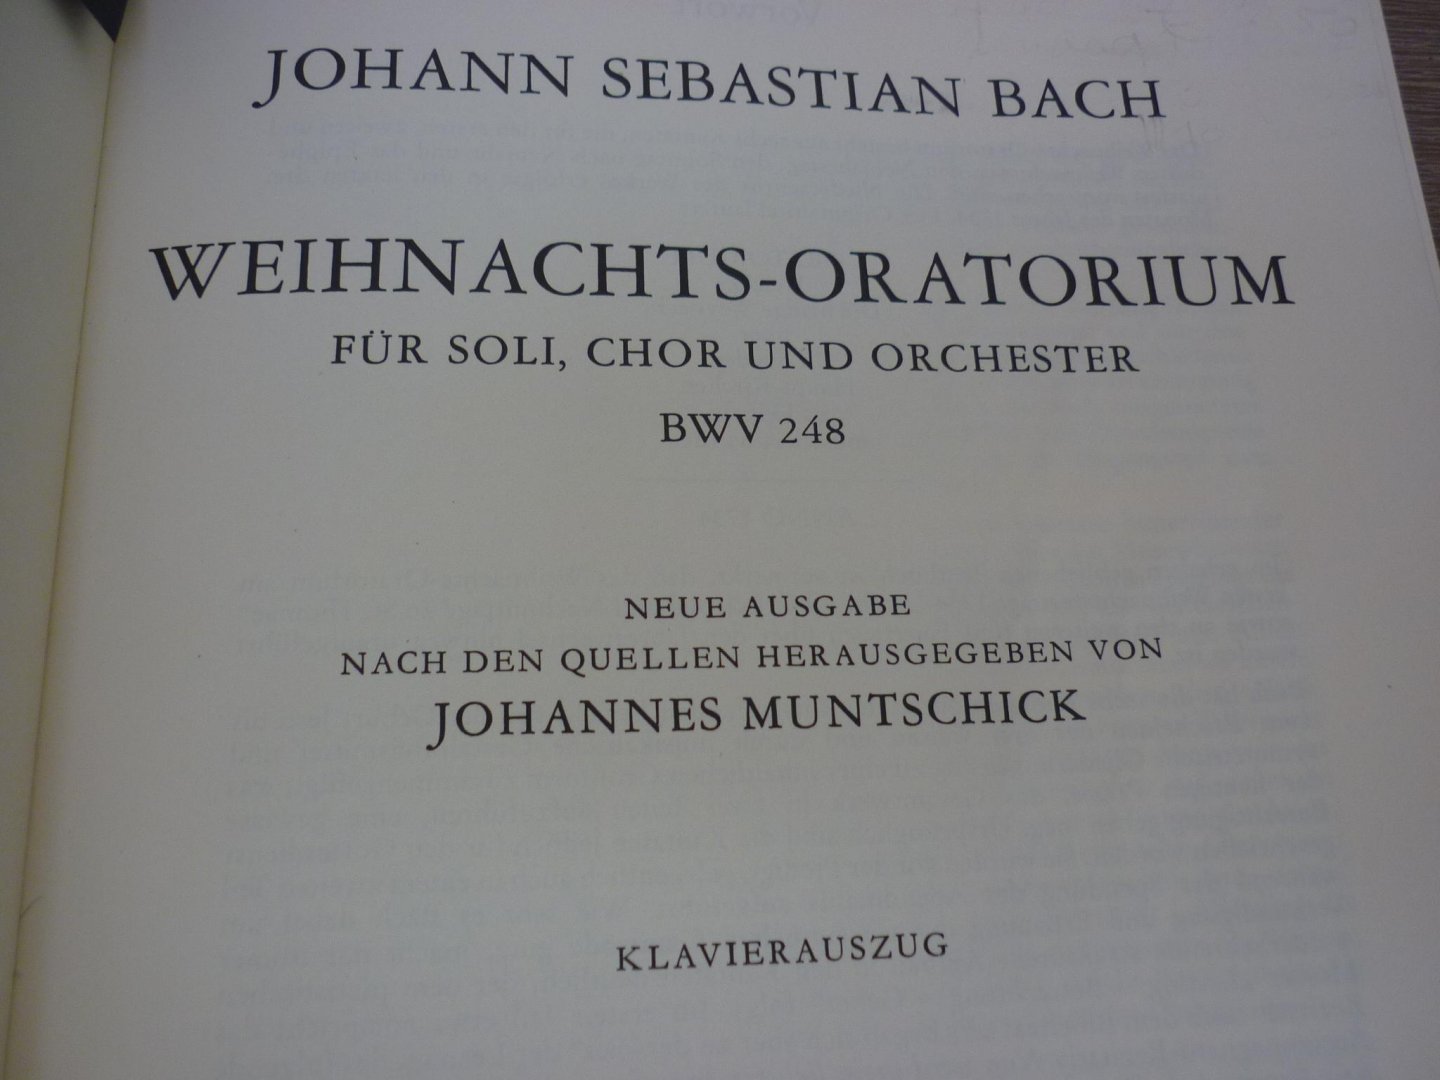 Bach; J. S.  (1685-1750) - Weihnachts Oratorium BWV 248 (Soli-Choir-Orch.) - Klavierauszug; Neue ausgabe herausgegeben von Joh. Muntschick